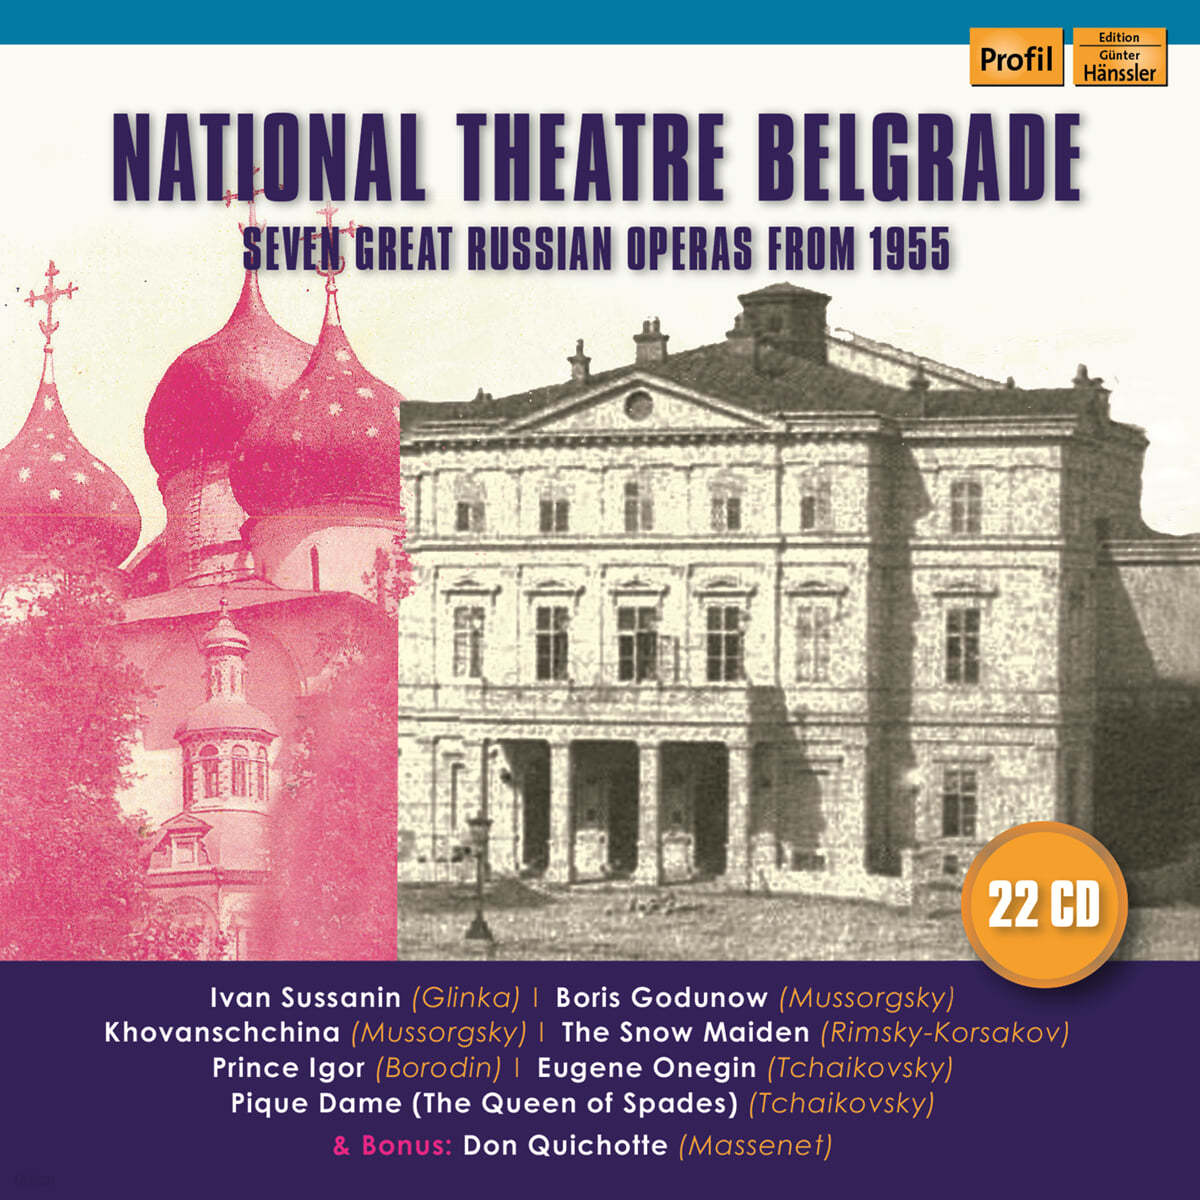 러시아 오페라 선집 (National Theatre Belgrade - 7 Great Russian Operas from 1955) 